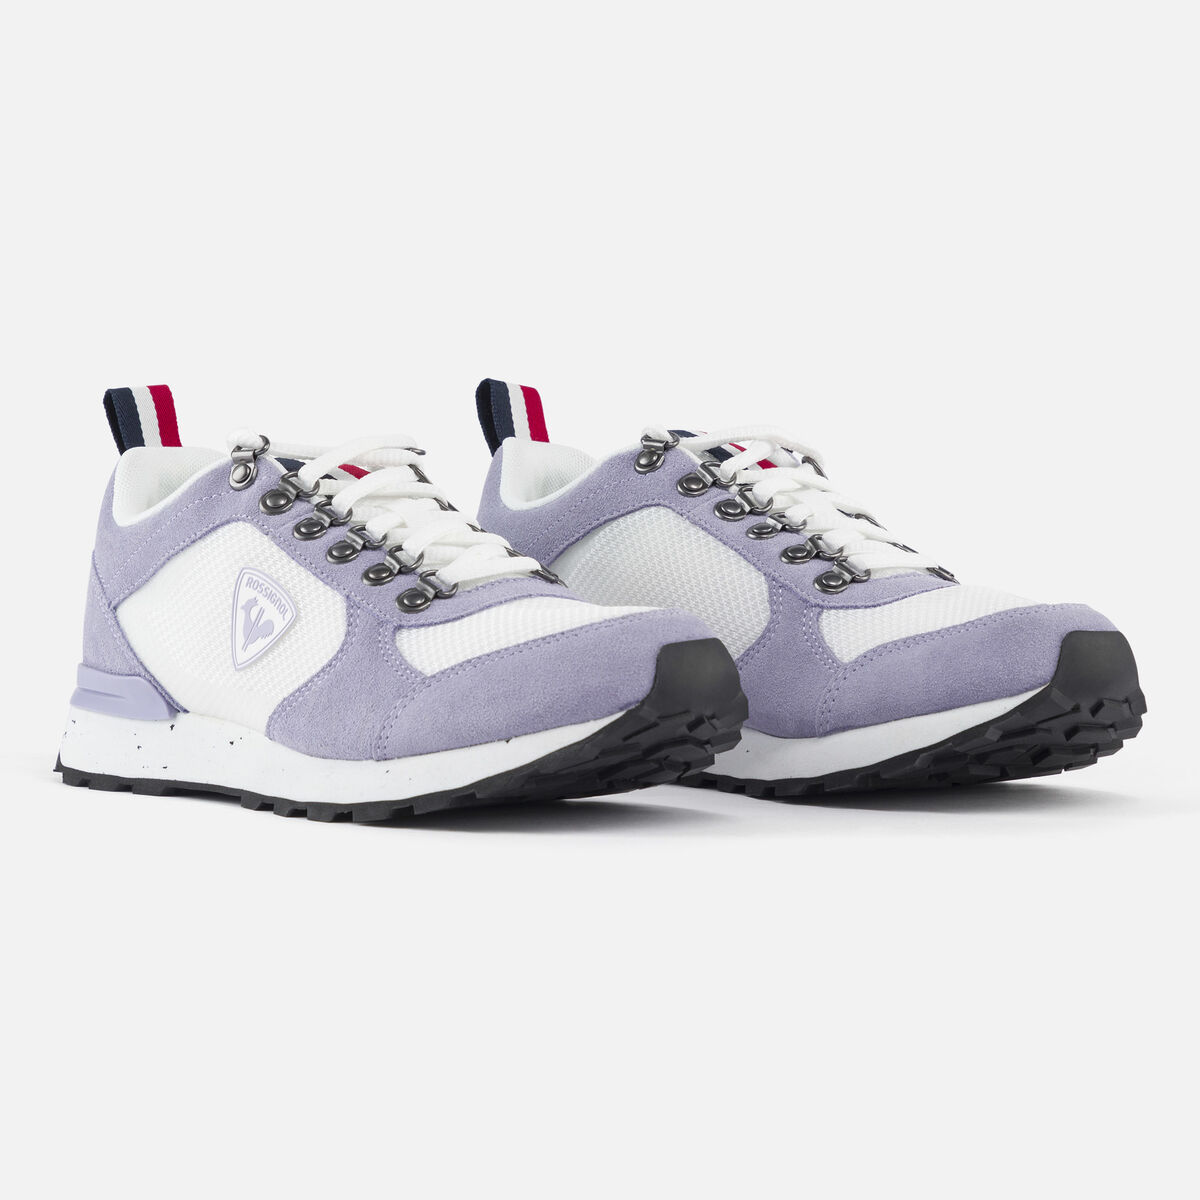 Rossignol Women's Heritage Special lavender sneakers pinkpurple